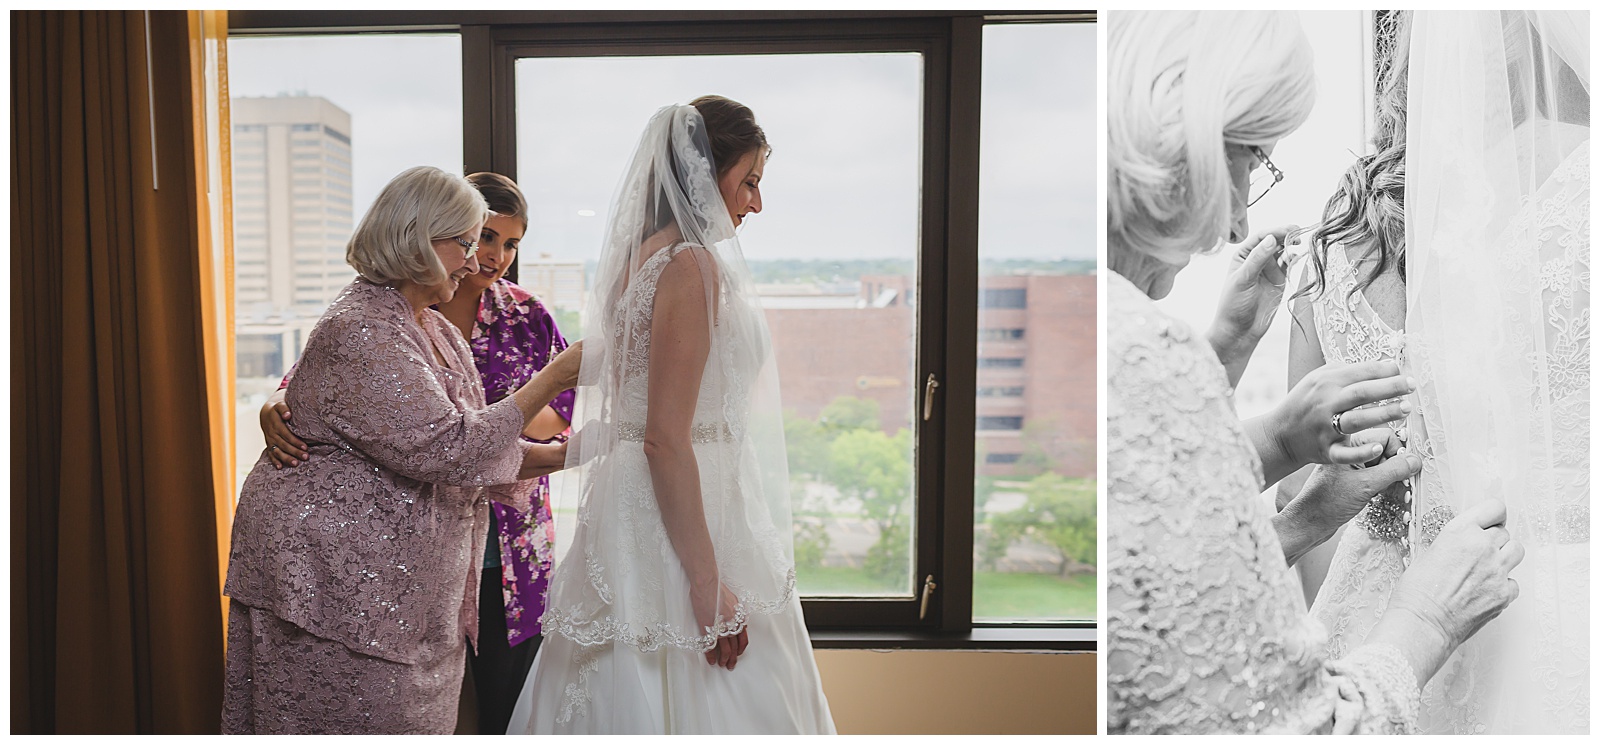 Wedding photography in Topeka, Kansas, by Kansas City wedding photographers Wisdom-Watson Weddings.